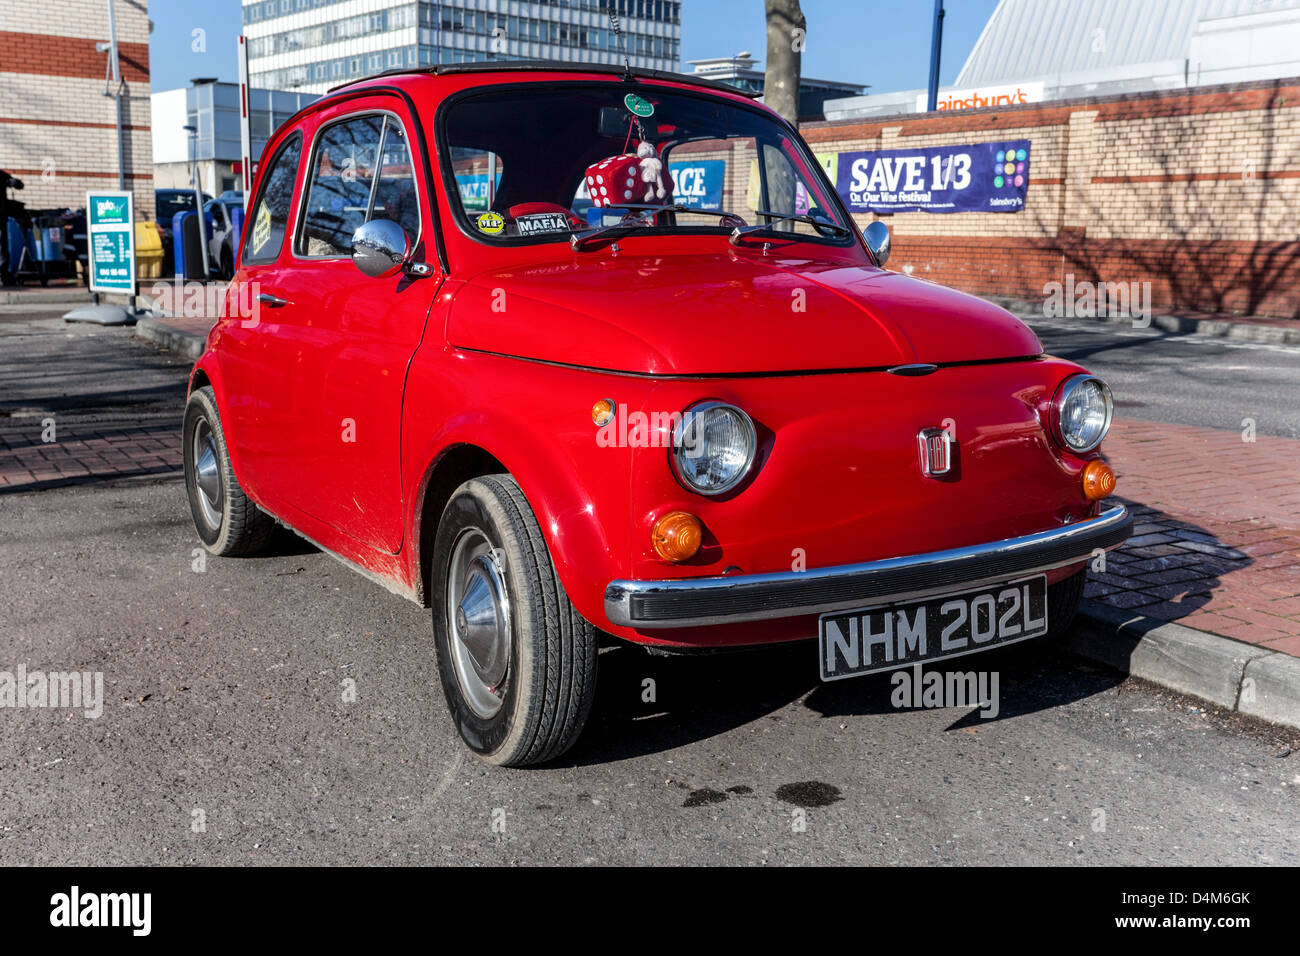 Vue de trois quarts avant d'une Fiat 500 coupé, Londres, Angleterre, Royaume-Uni. Banque D'Images